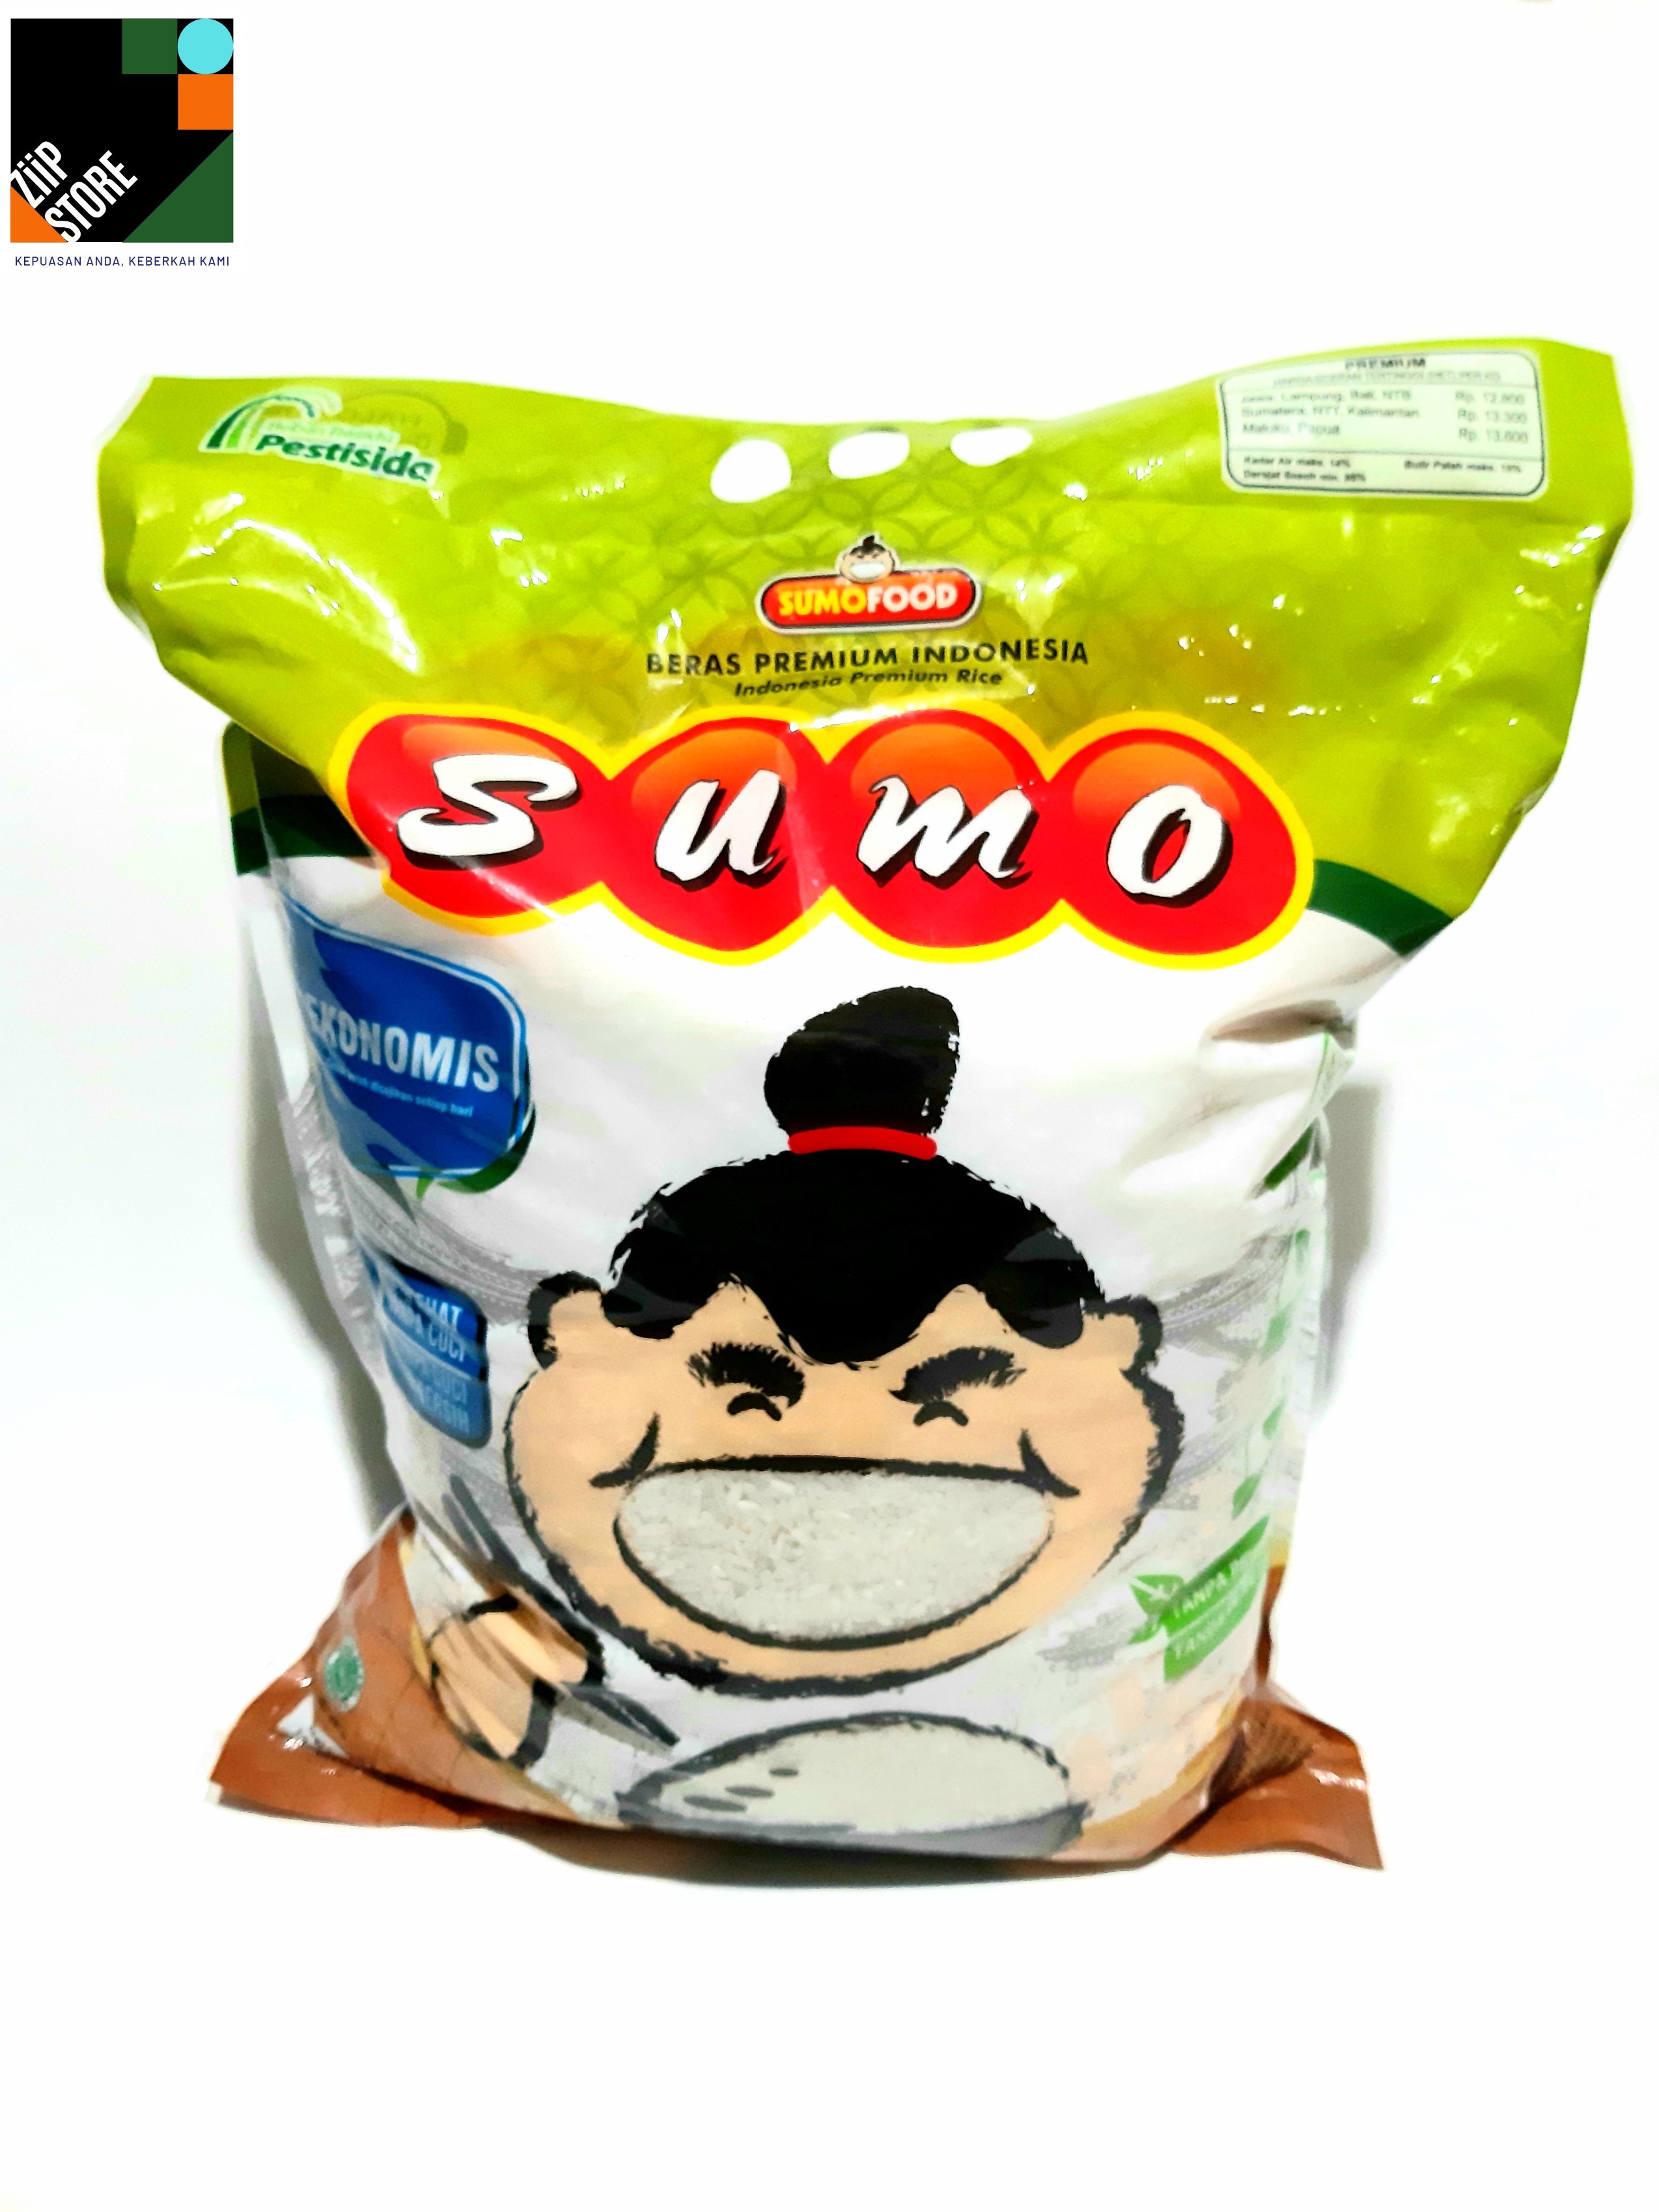 Beras sumo